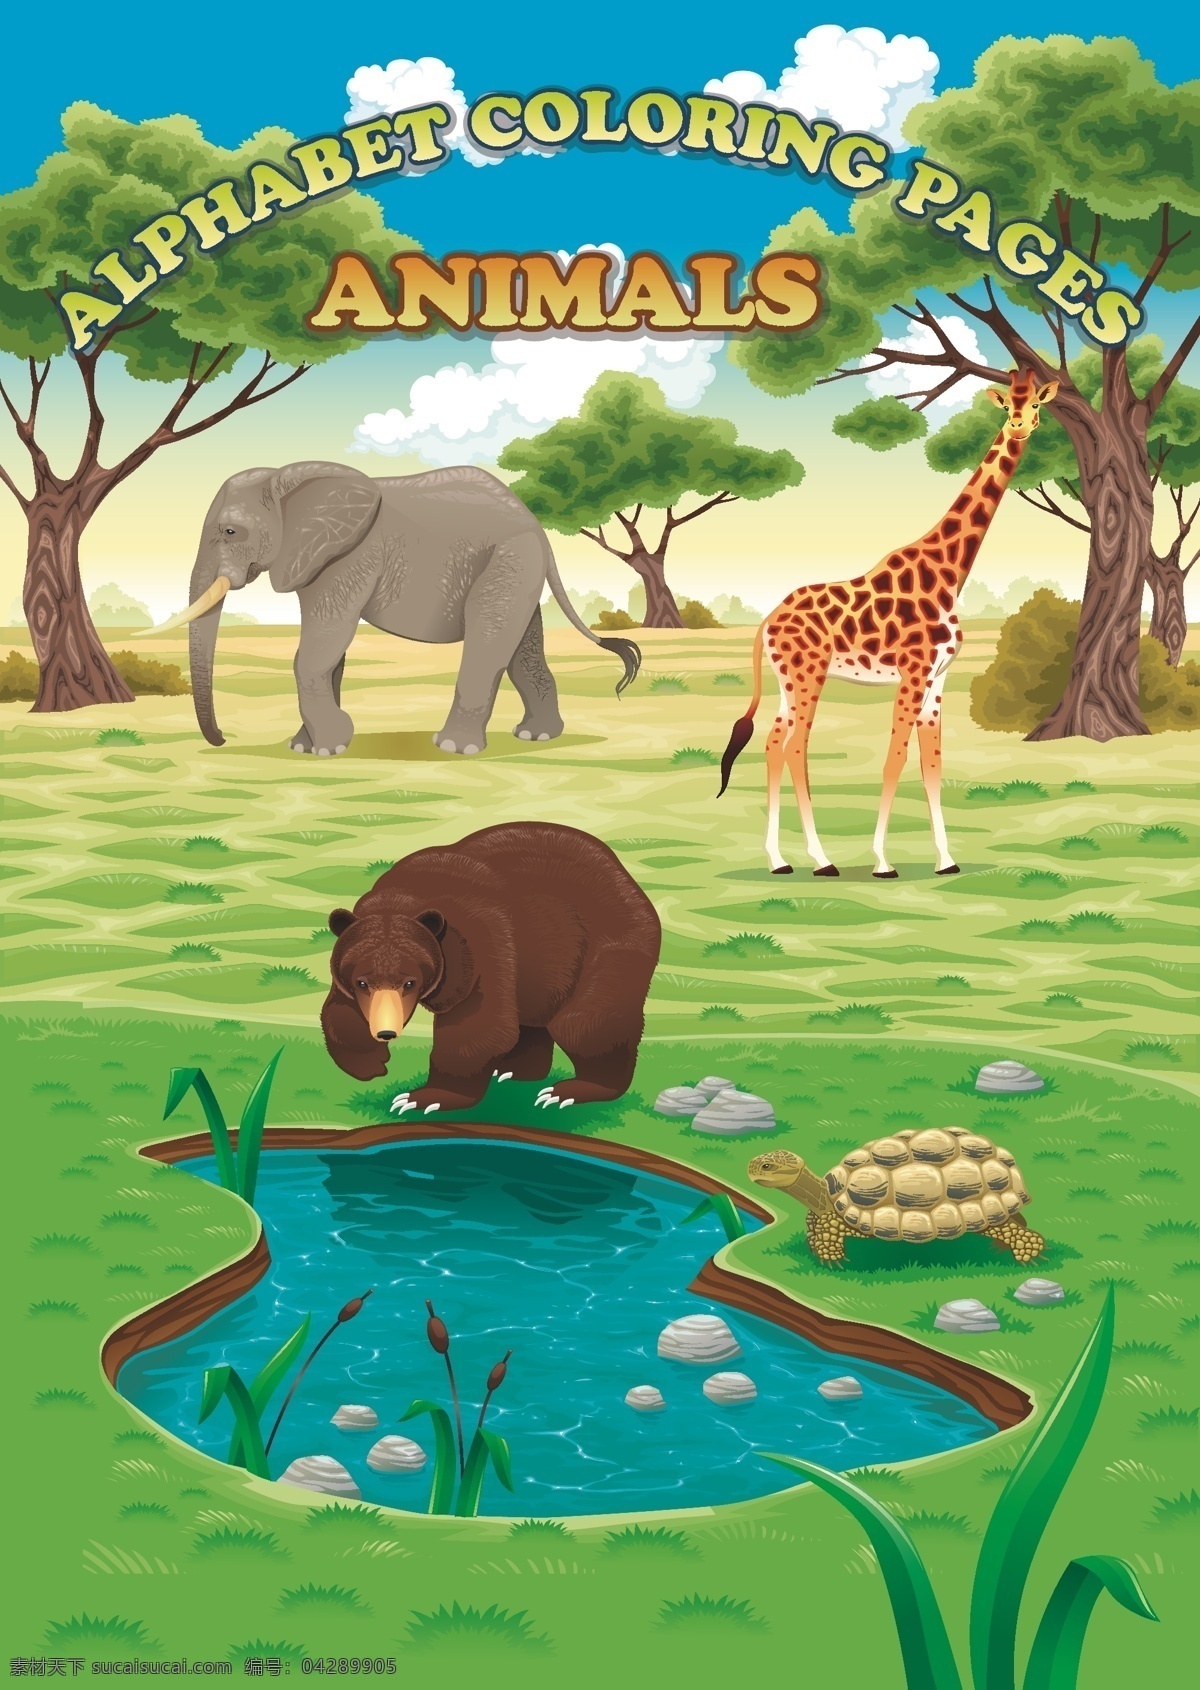 动物园海报 动物 海报 动物园 熊 乌龟 大象 长颈鹿 草原 森林 animals 矢量 高清 广告设计矢量 生物世界 野生动物